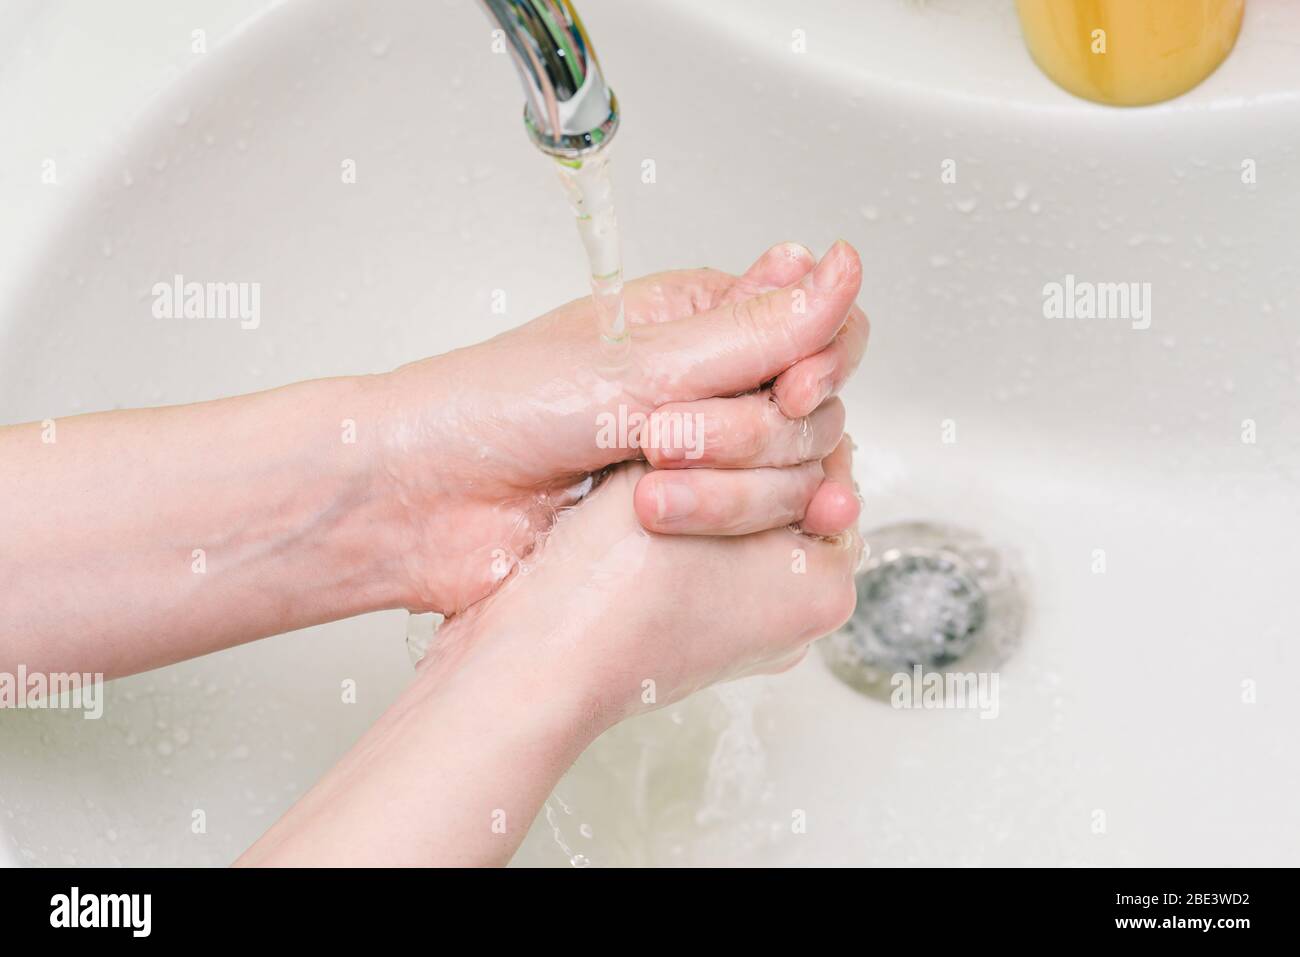 Hände unter fließendem Wasser waschen. Handbehandlung und Schutz vor Bakterien, Schmutz und Viren. Coronavirus oder Covid-2019 Prävention. Stockfoto